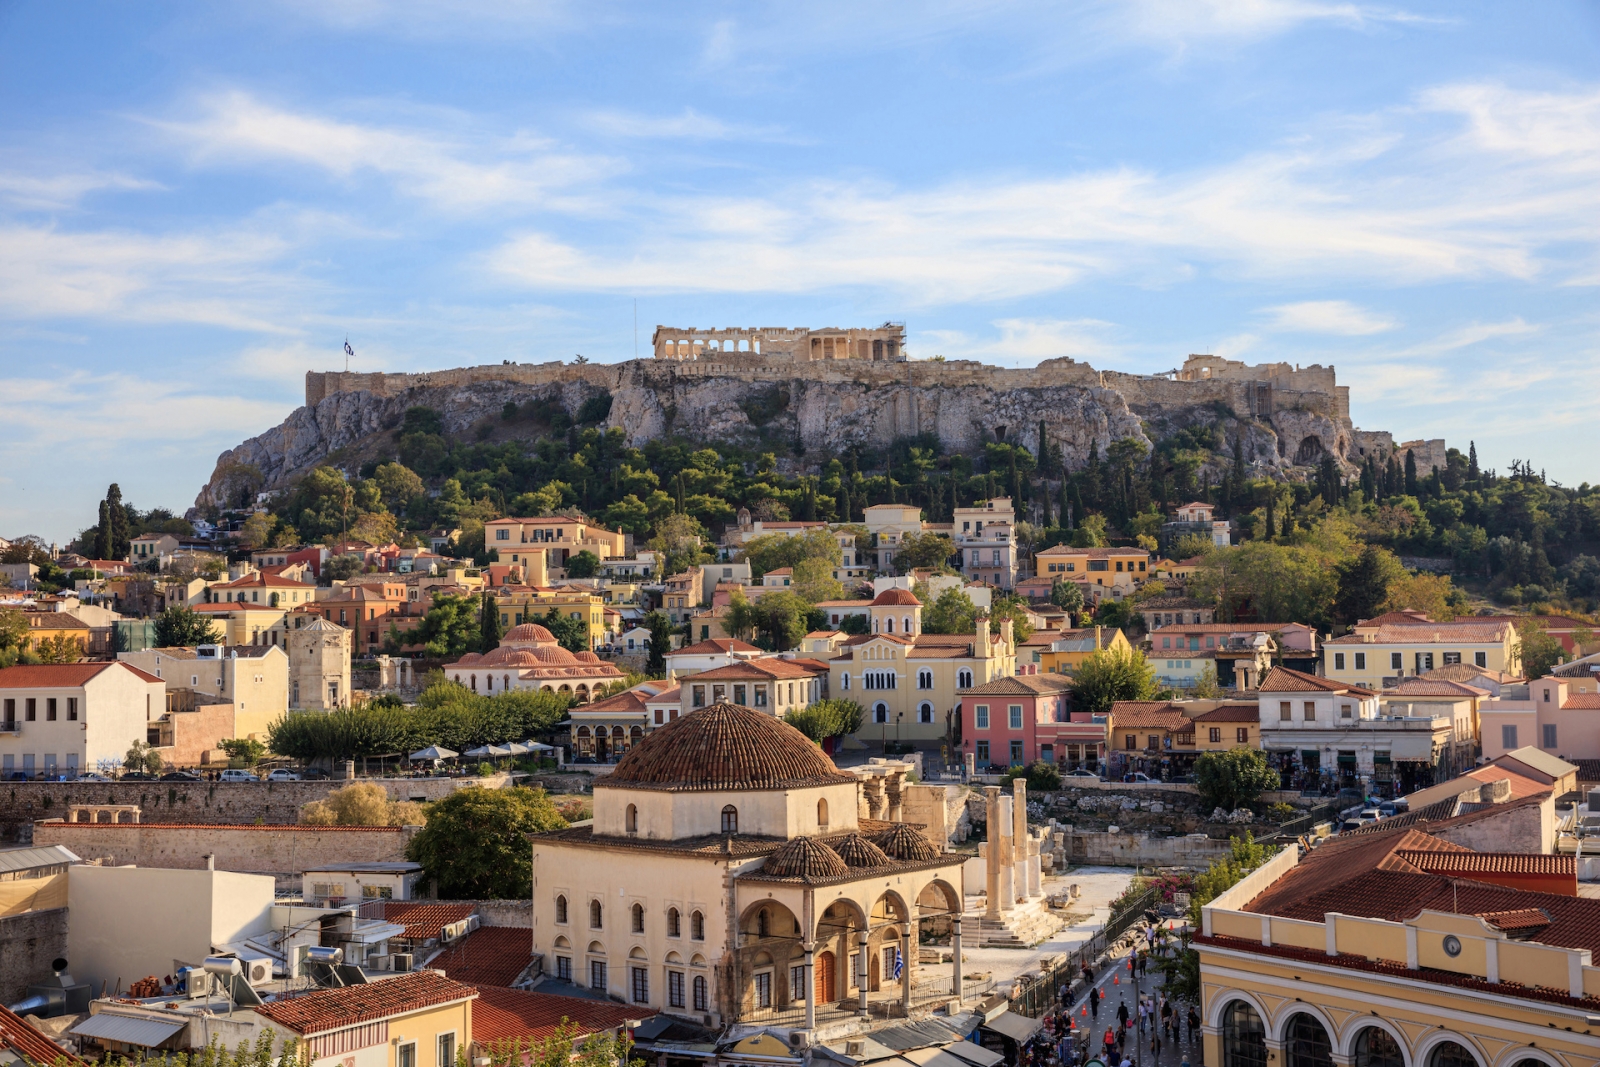 Athens, Greece. Acropolis rock and Monastiraki square